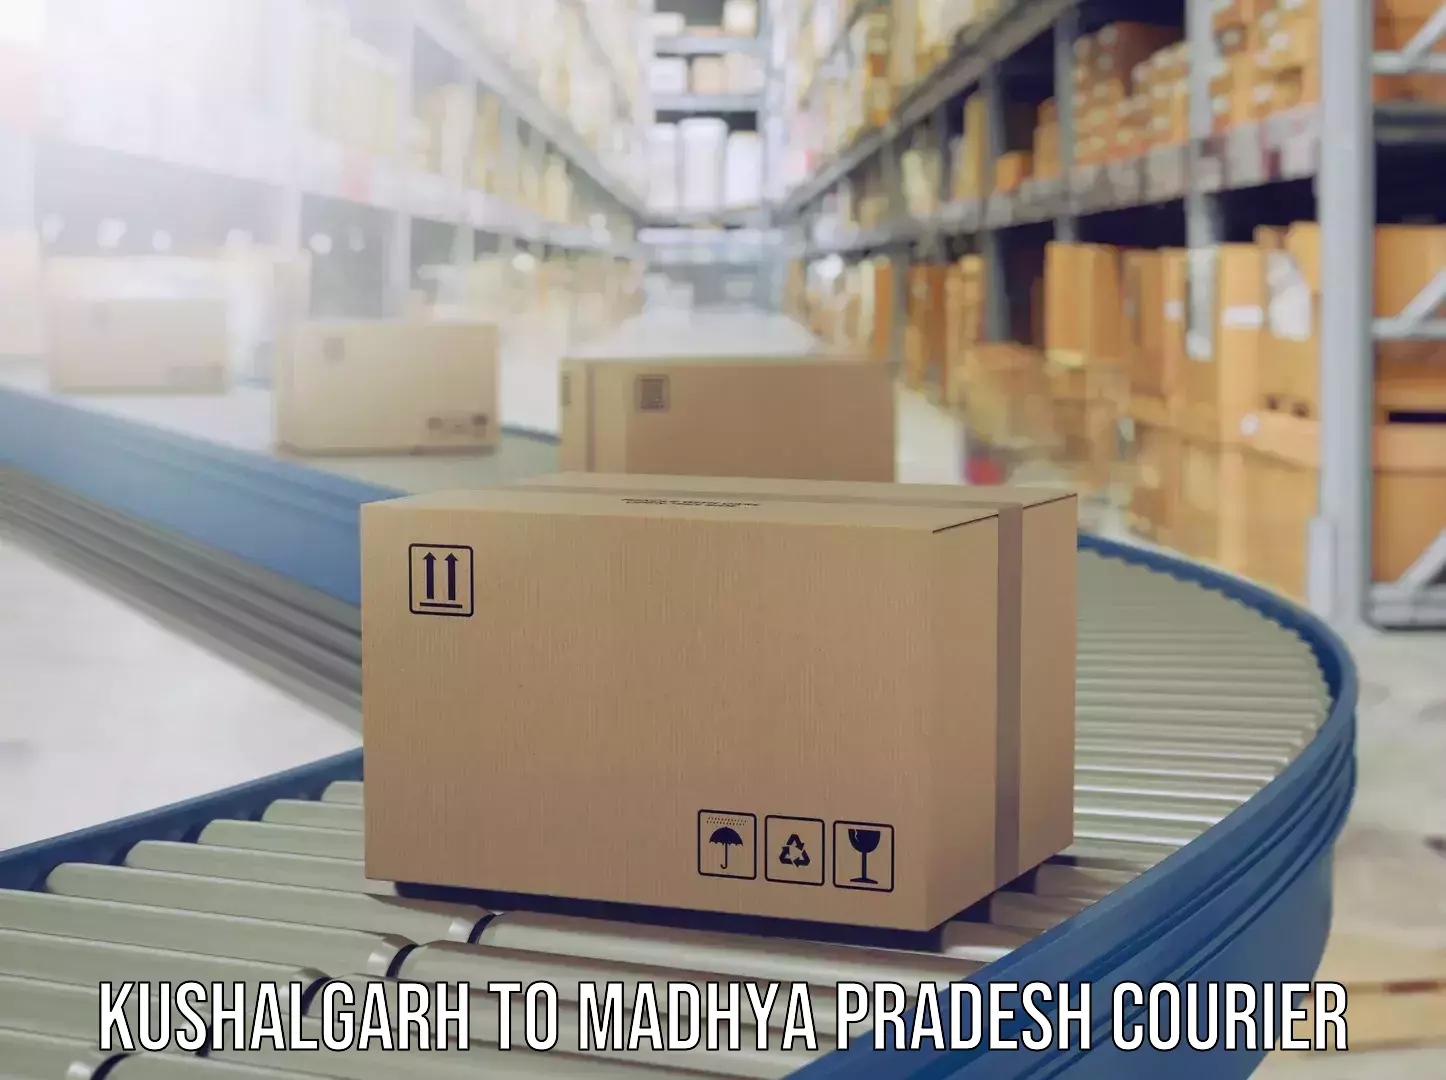 Luggage delivery system Kushalgarh to Madhya Pradesh